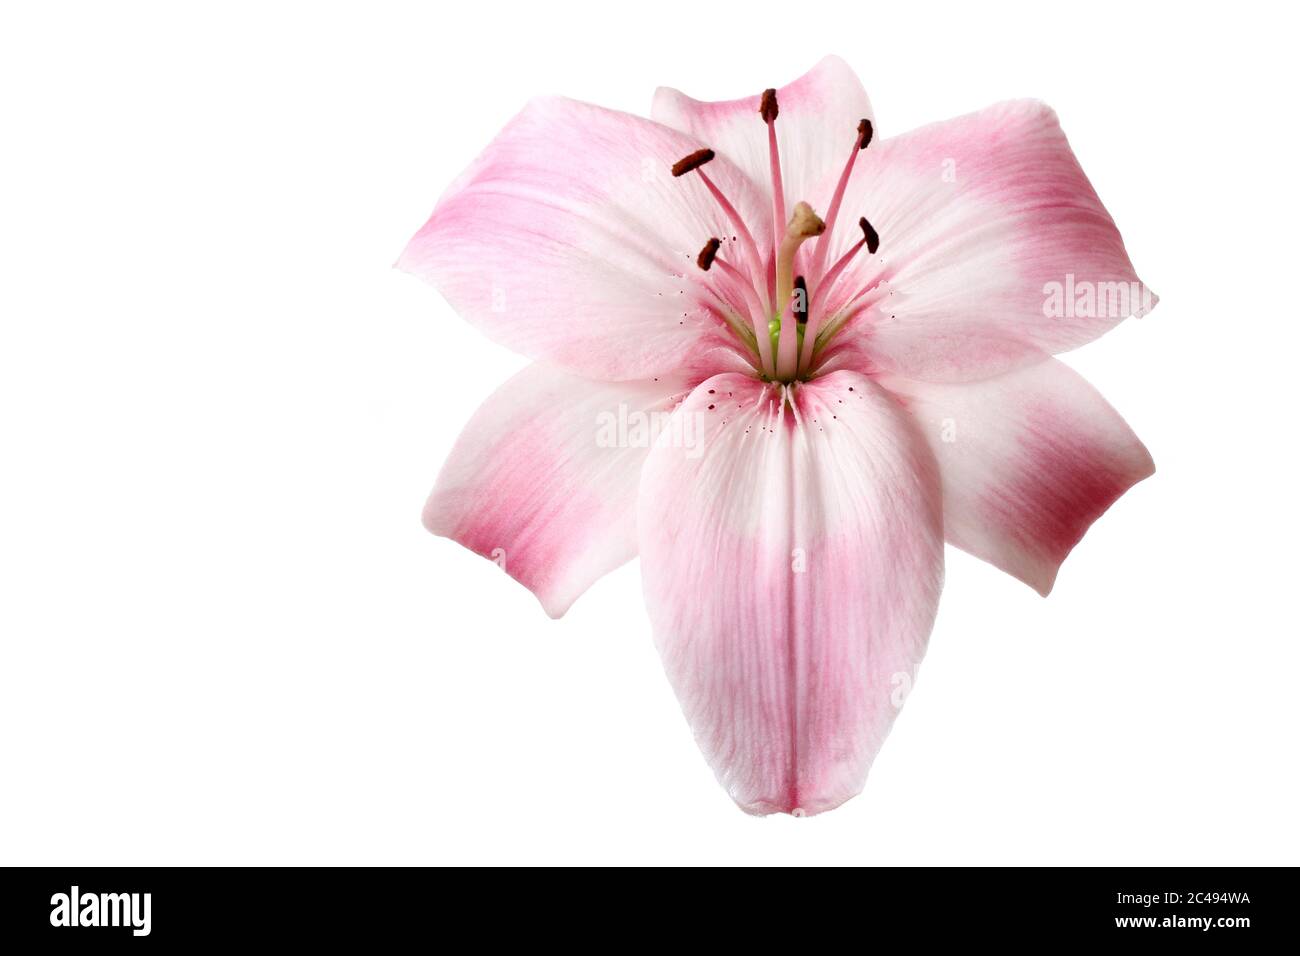 Une belle fleur de lys (genre lilium) de rose clair isolée sur fond blanc  Photo Stock - Alamy